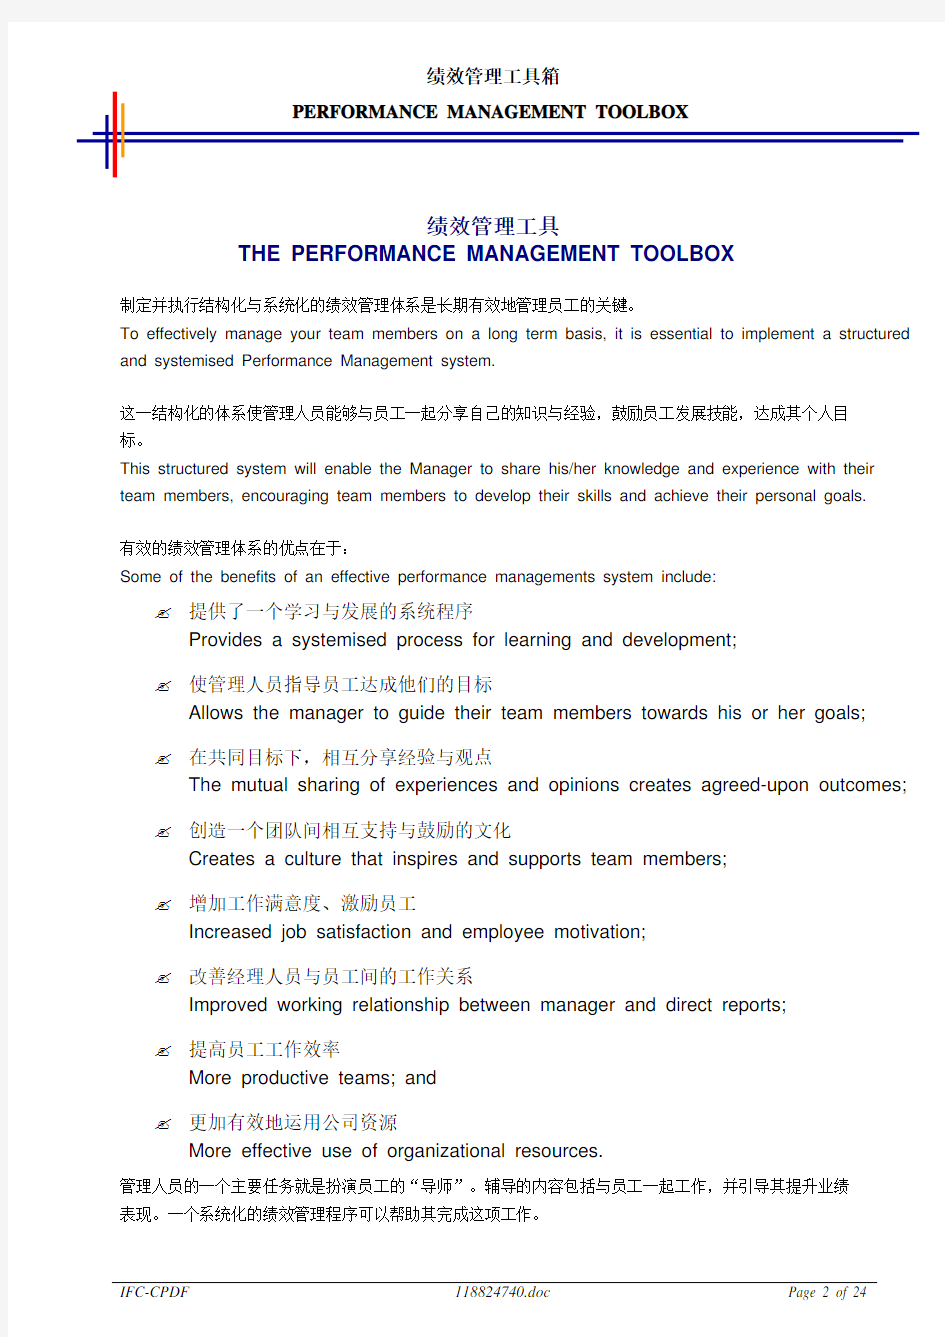 毕博-管理咨询工具方法—Performance Management Toolbox-chinese